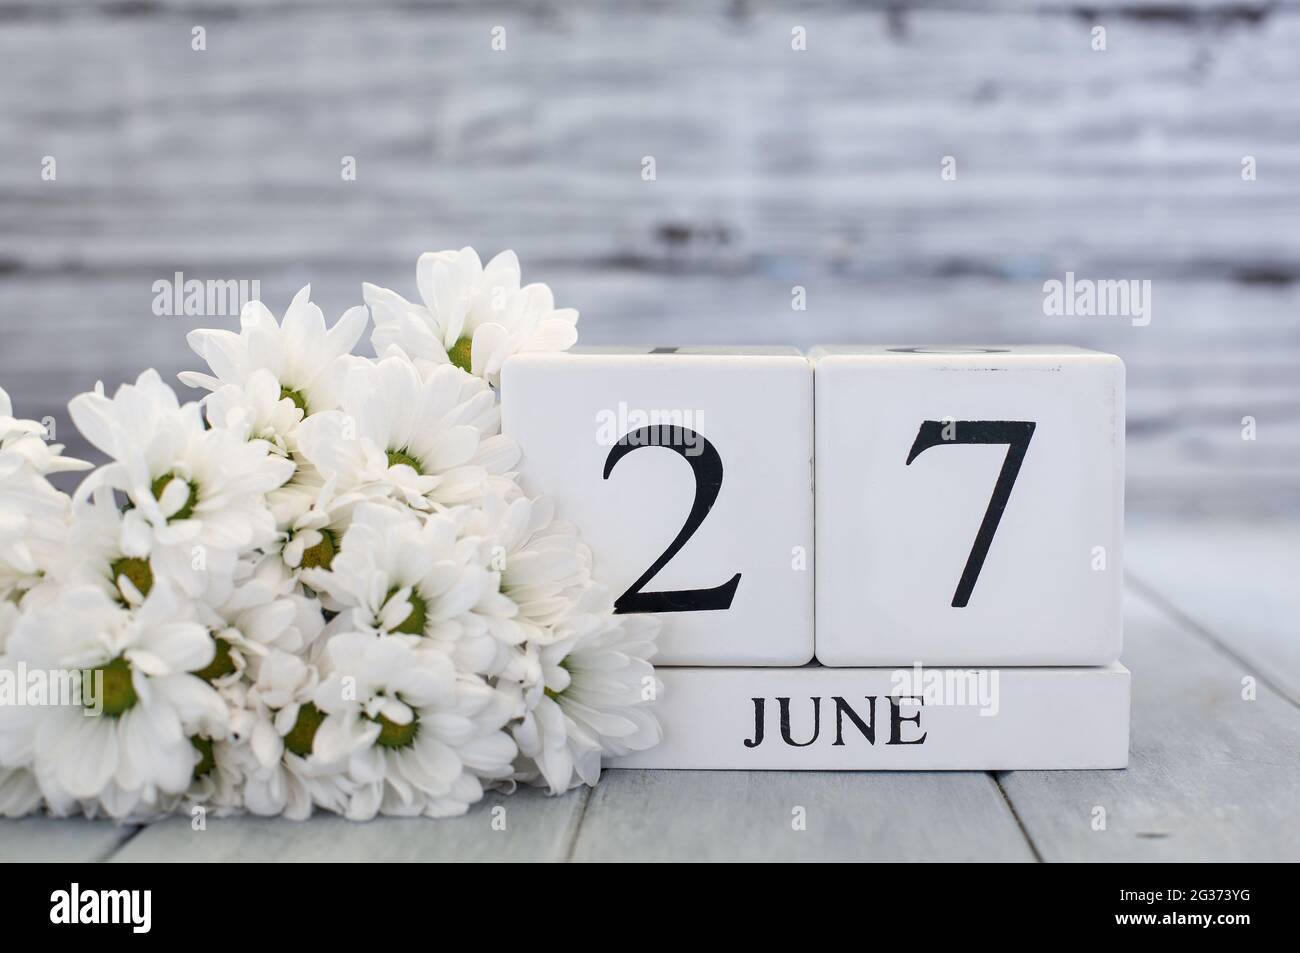 Blocs de calendrier en bois blanc avec la date du 27 juin et des pâquerettes blanches. Mise au point sélective avec arrière-plan flou. Banque D'Images